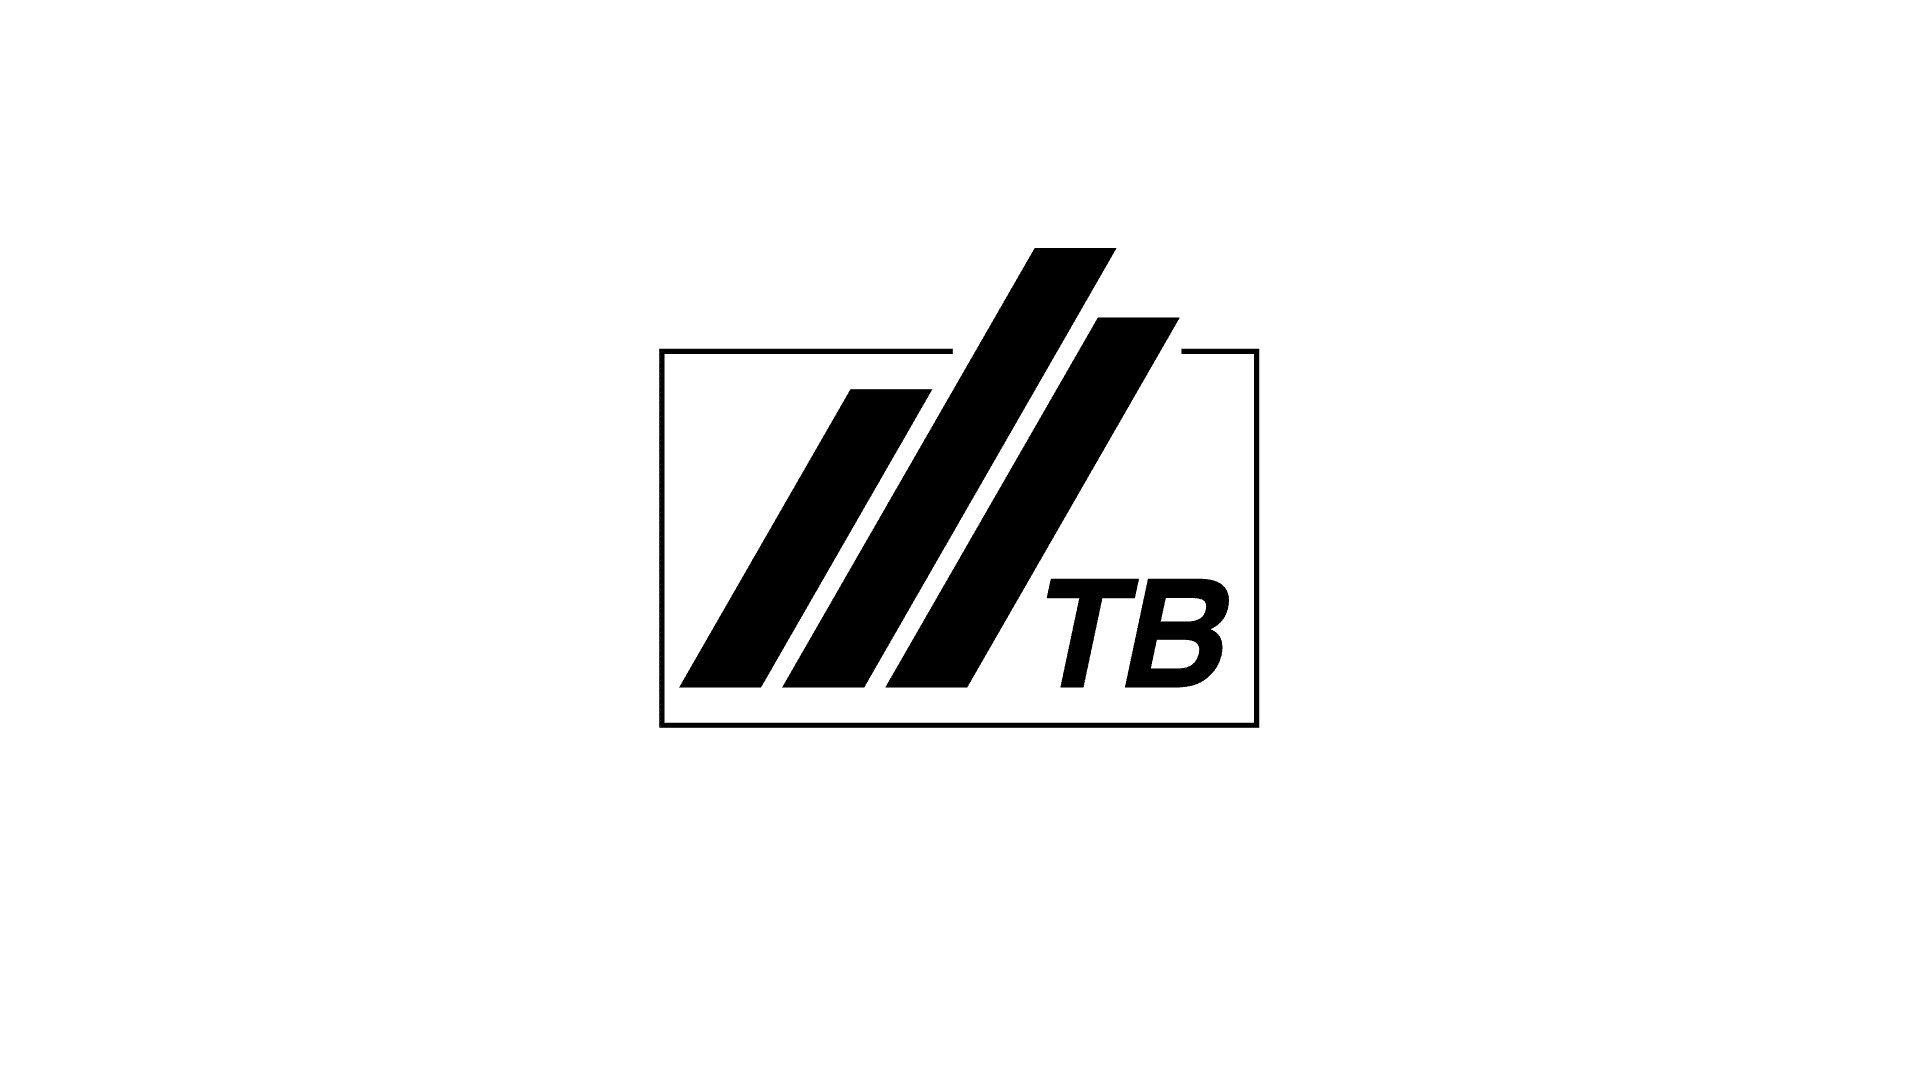 tatra banka logo